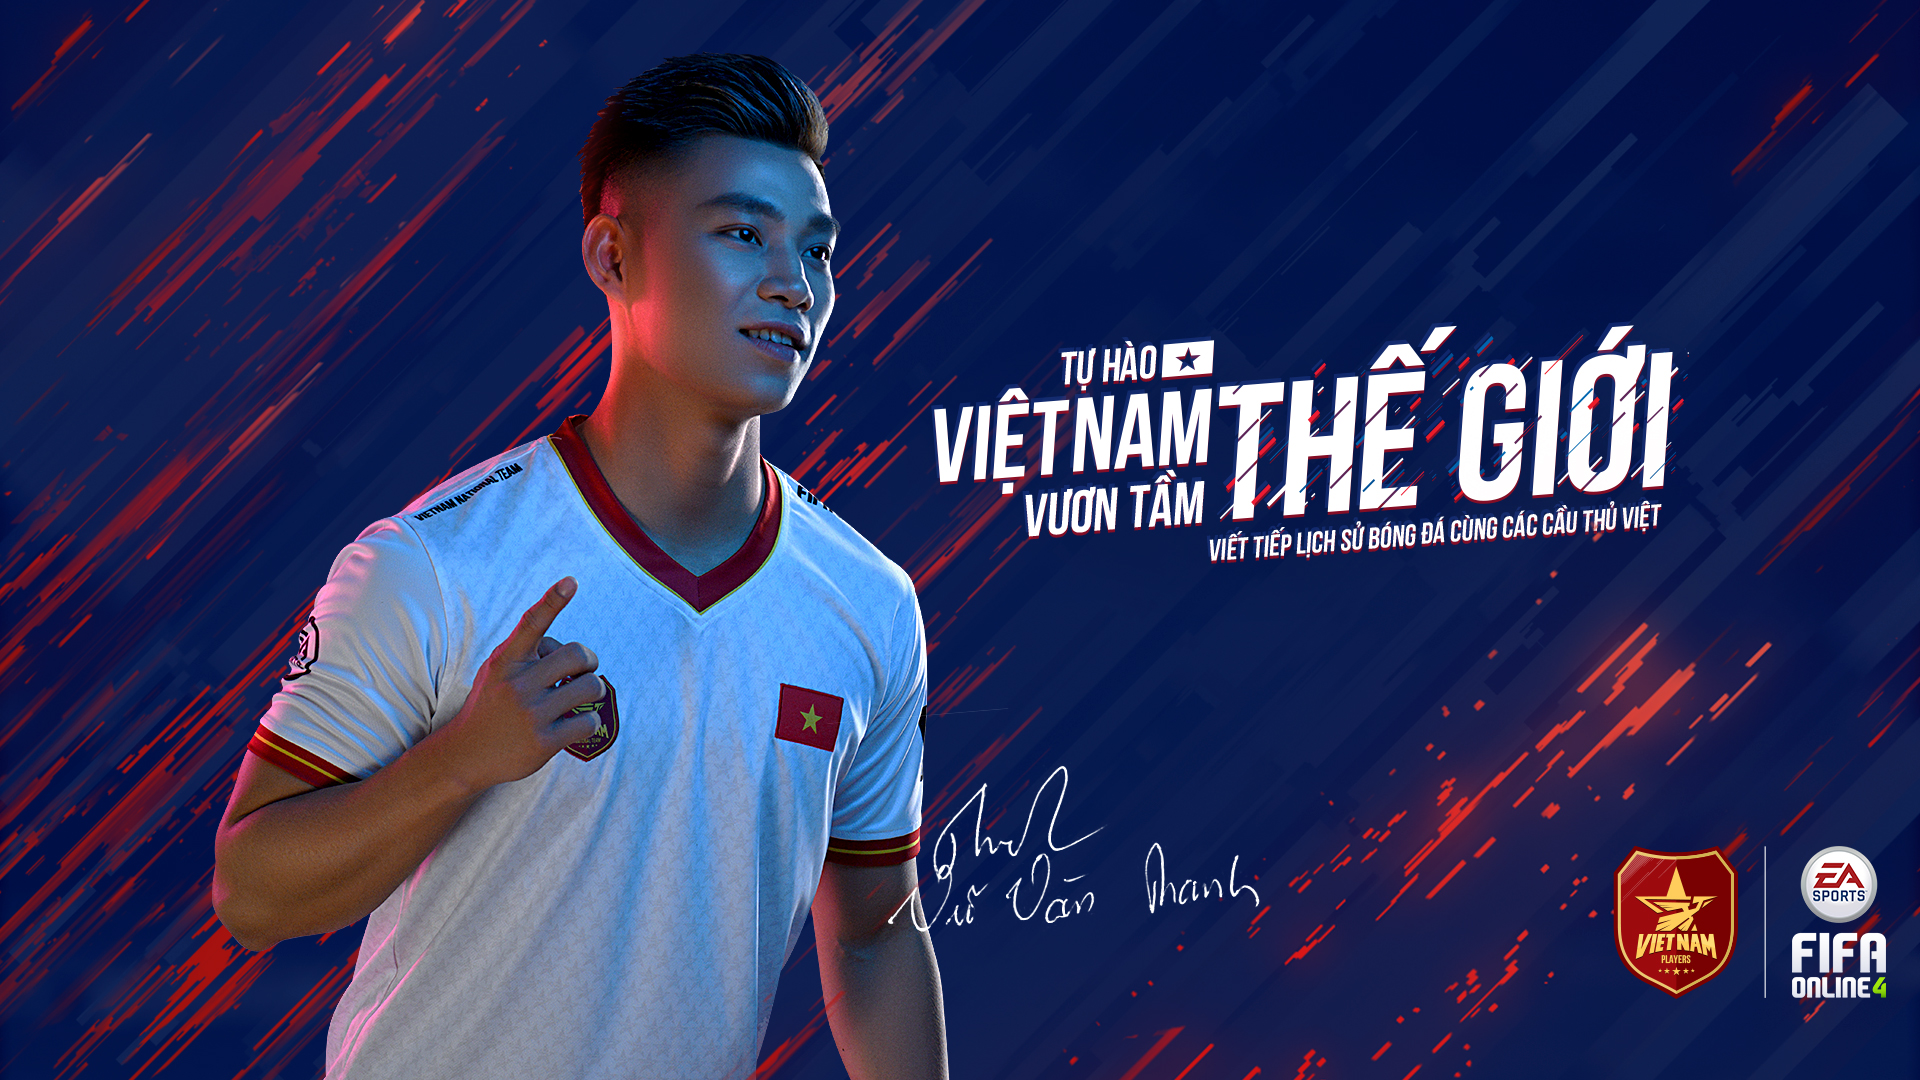 General 1920x1080 Vietnam Vietnam Football Vu Van Thanh footballers soccer player